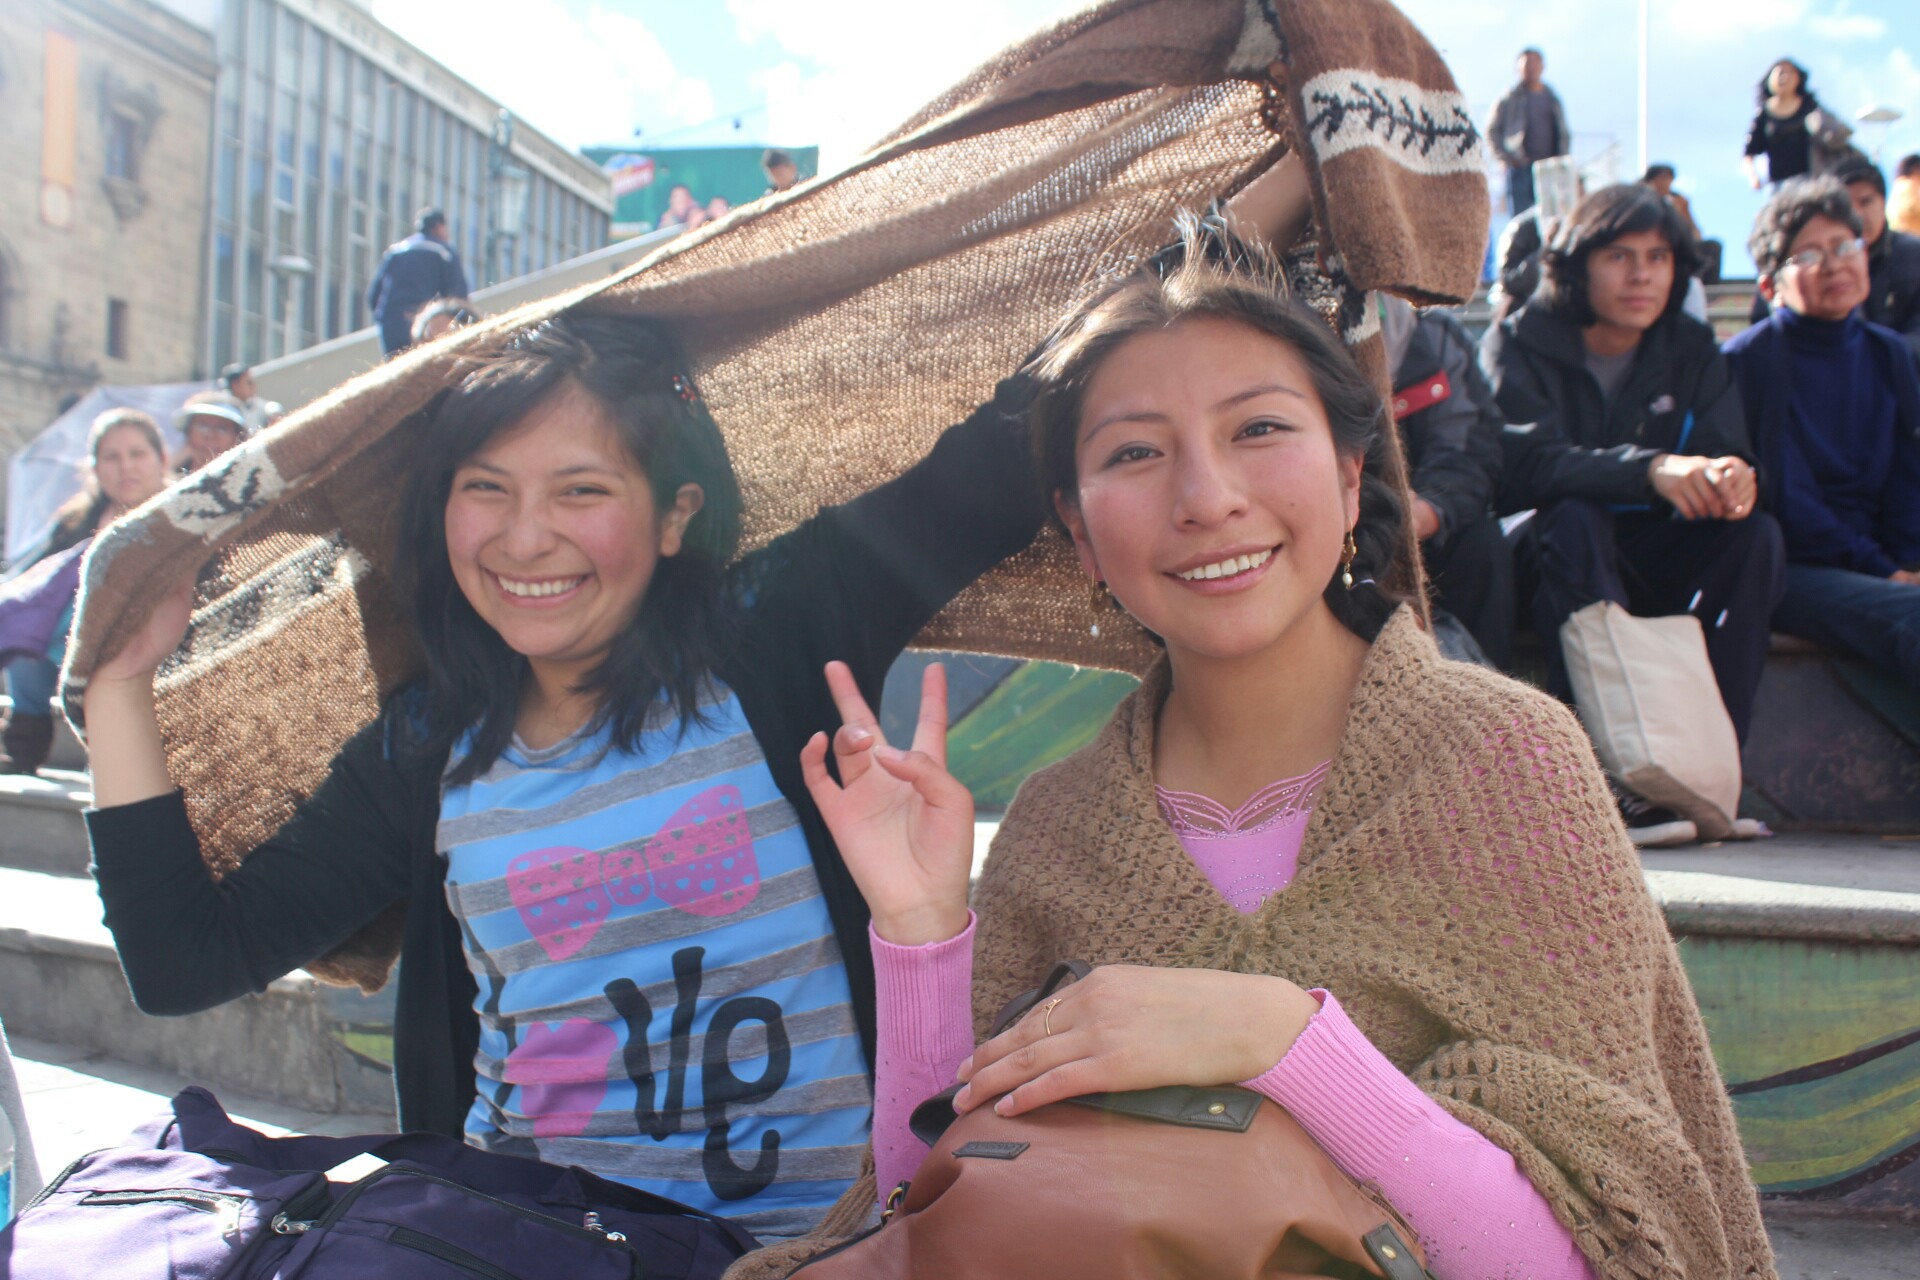 ラパスでの出会い 毎日一緒にいたボリビア人の女の子たちとの別れ 桑原淳 Junkuwabara 旅人美容師世界一周1000人カット 超超エリート株式会社代表